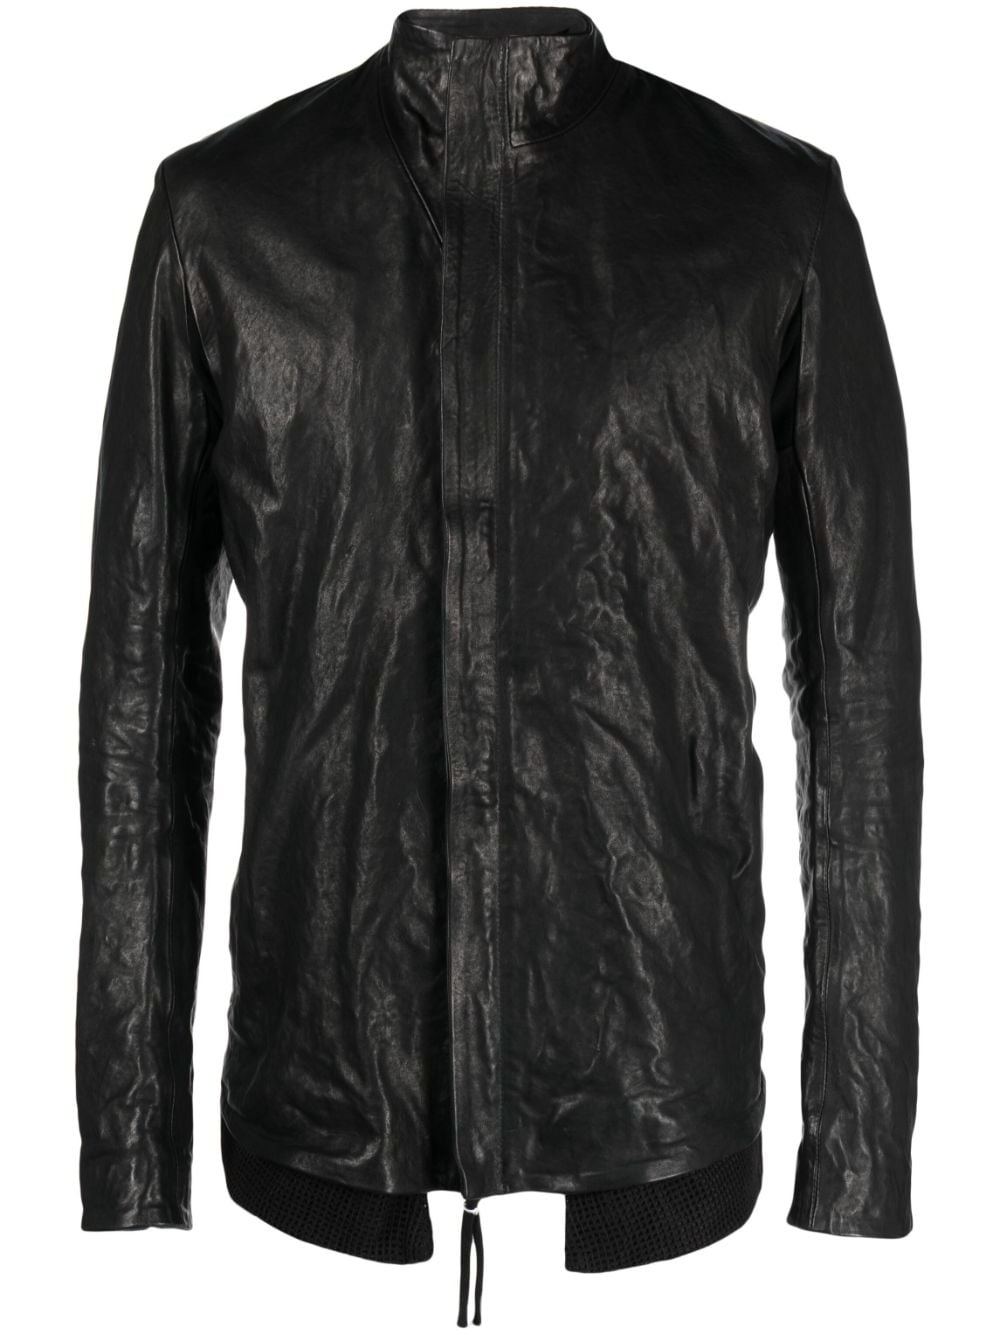 brushed high-neck leather jacket - 1